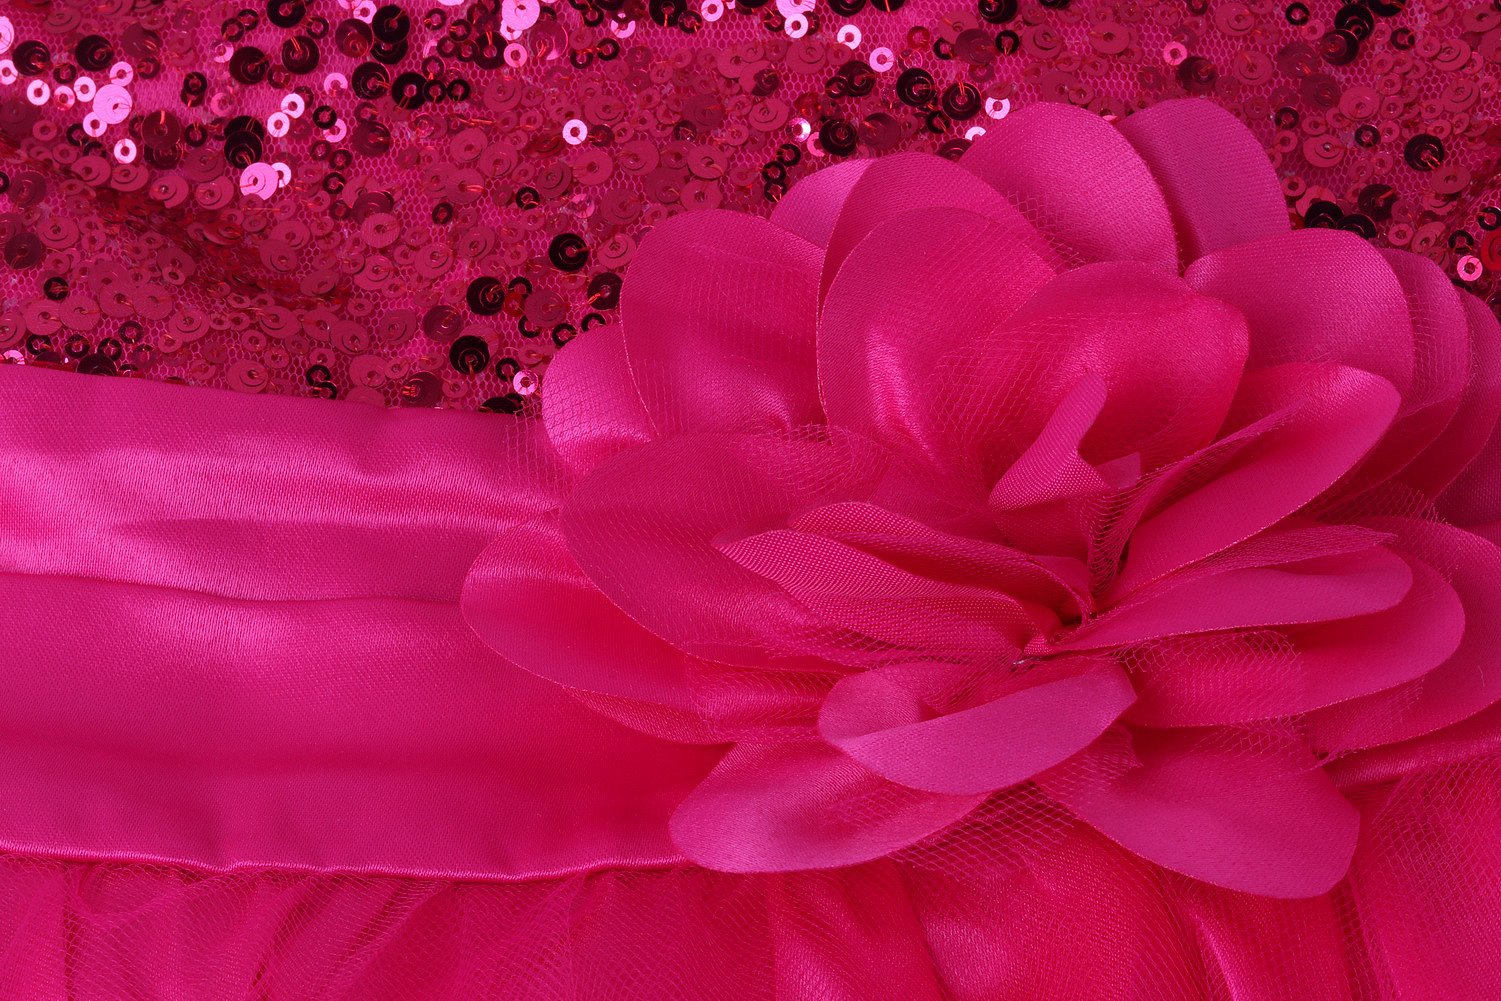 Wocau Little Girls' Sequin Mesh Tull Dress Sleeveless Flower Party Ball Gown